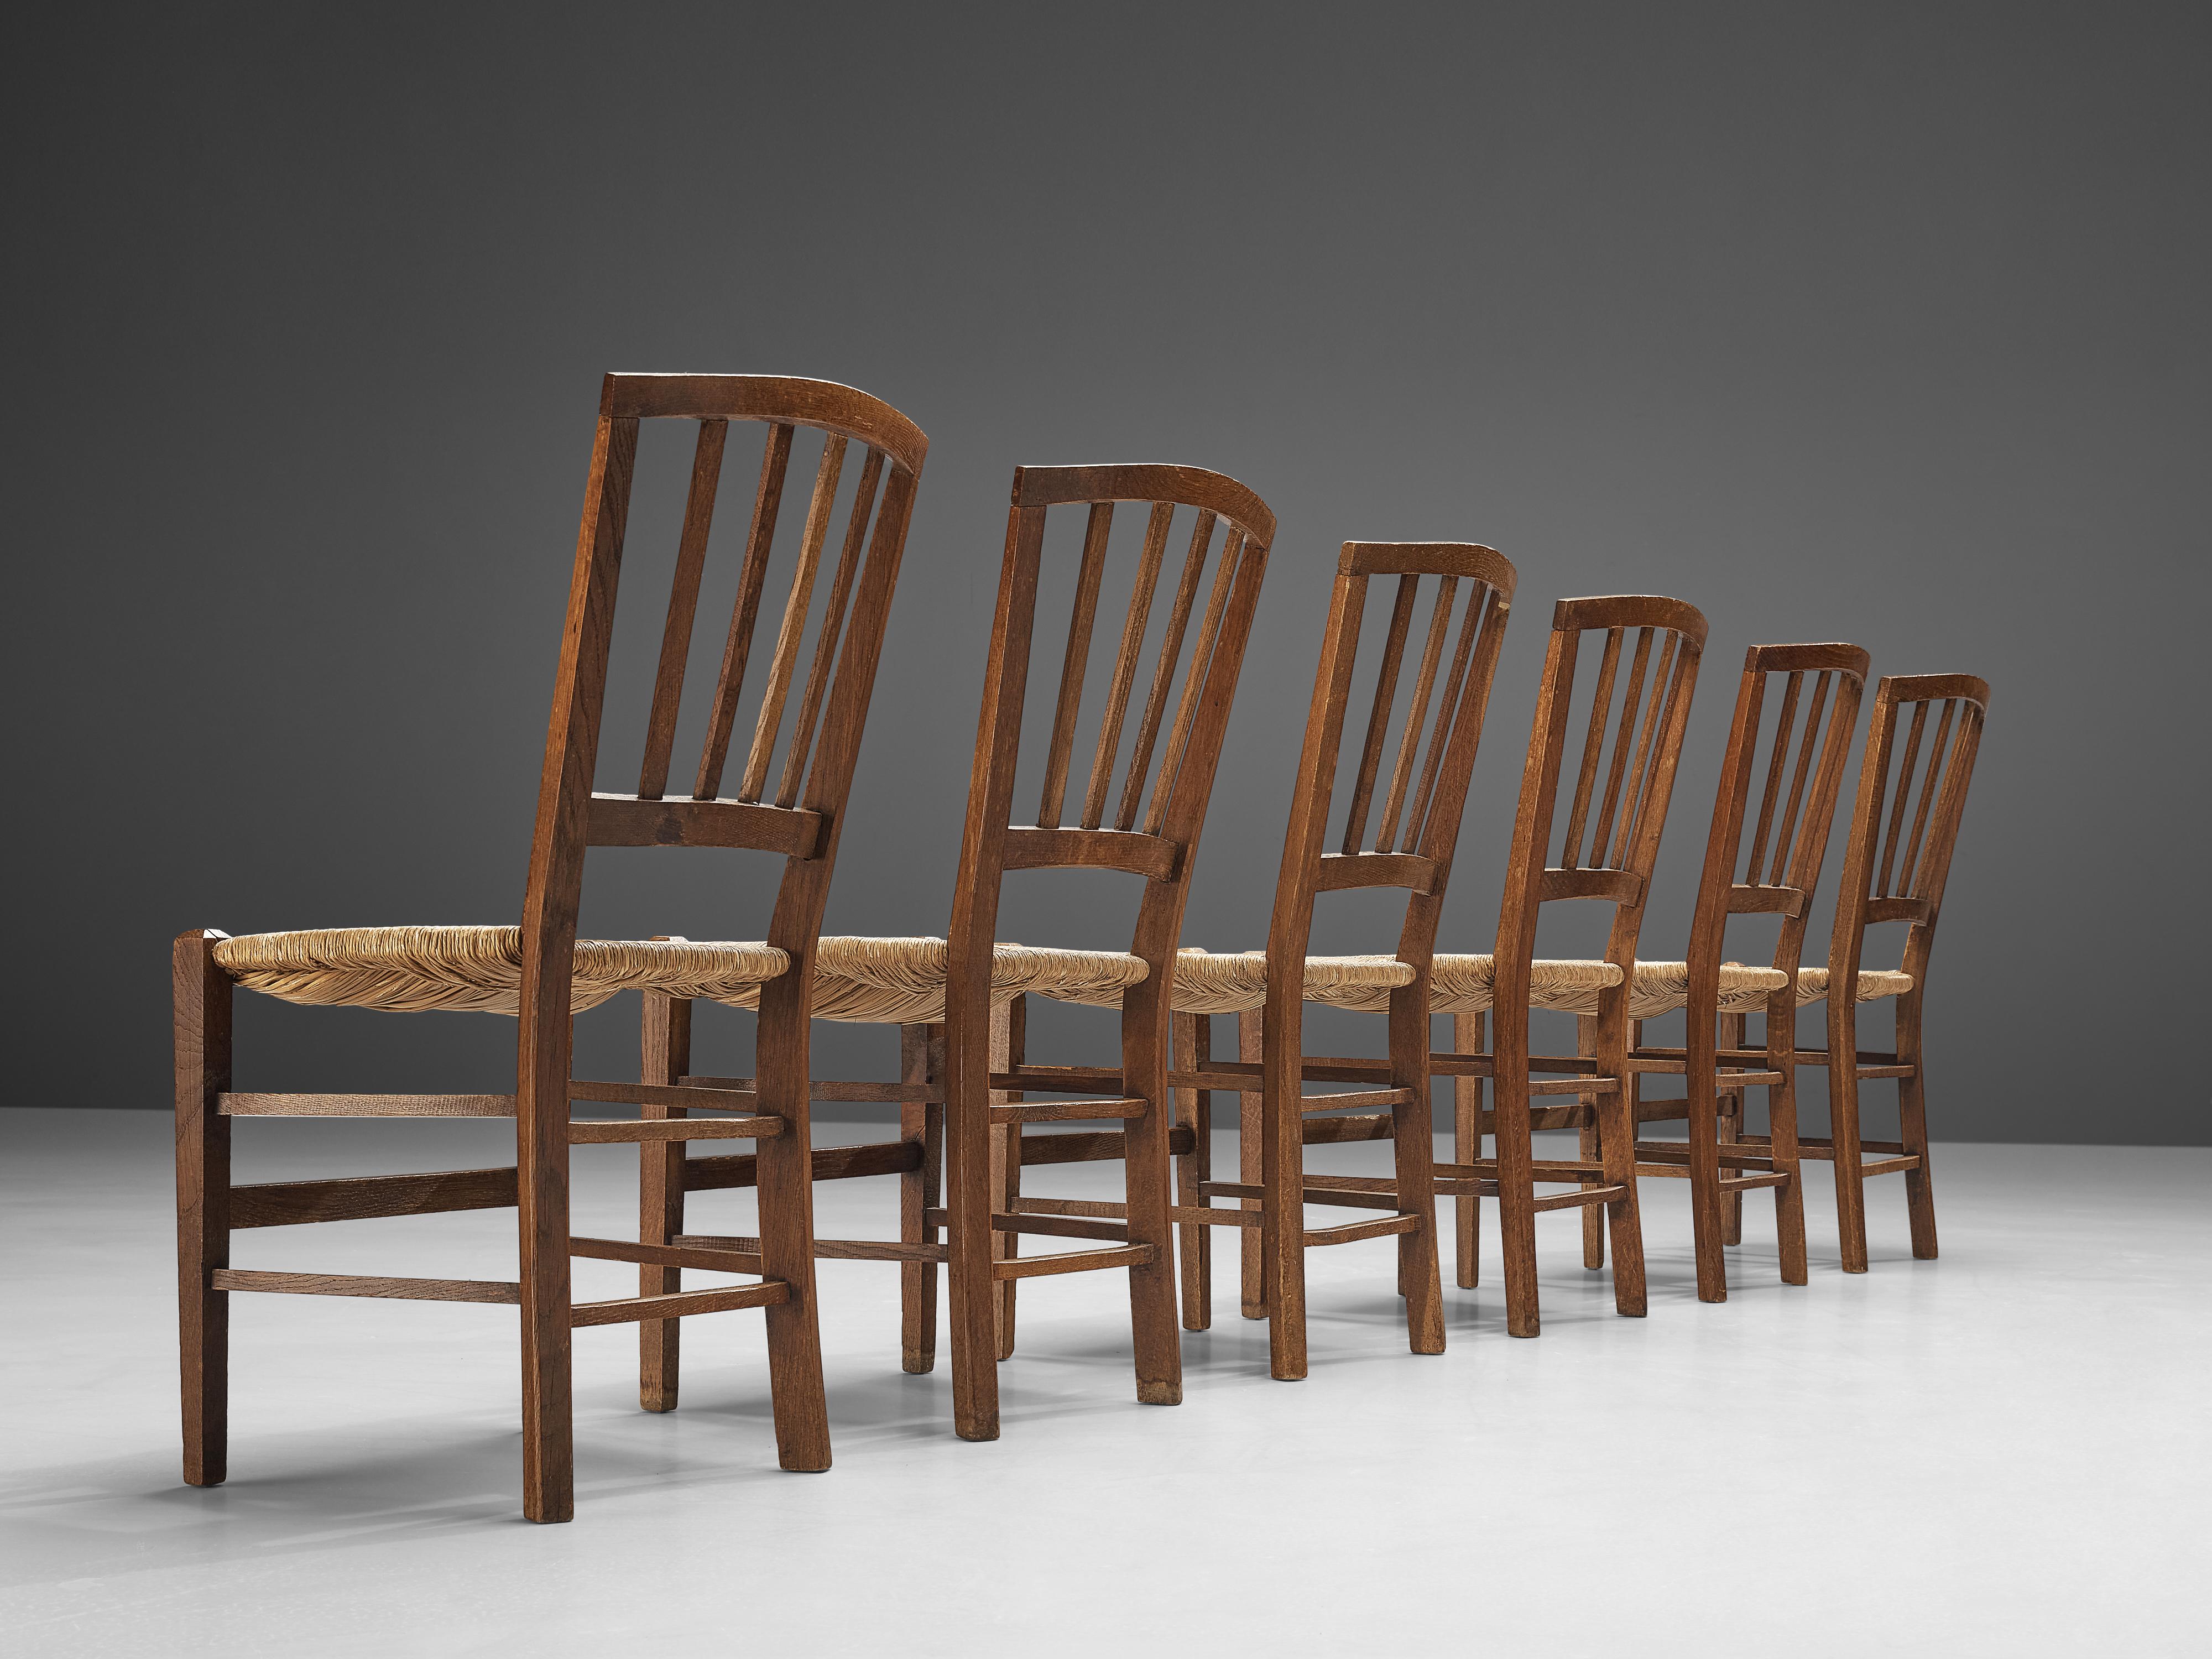 Esszimmerstühle, Eiche, Papierkordel, Niederlande, 1960er Jahre

Niederländische Esszimmerstühle aus Eiche und Papierkordel, hergestellt in den 1960er Jahren. Diese Esszimmerstühle verfügen über eine geometrische Rückenlehne, die sich leicht wölbt,